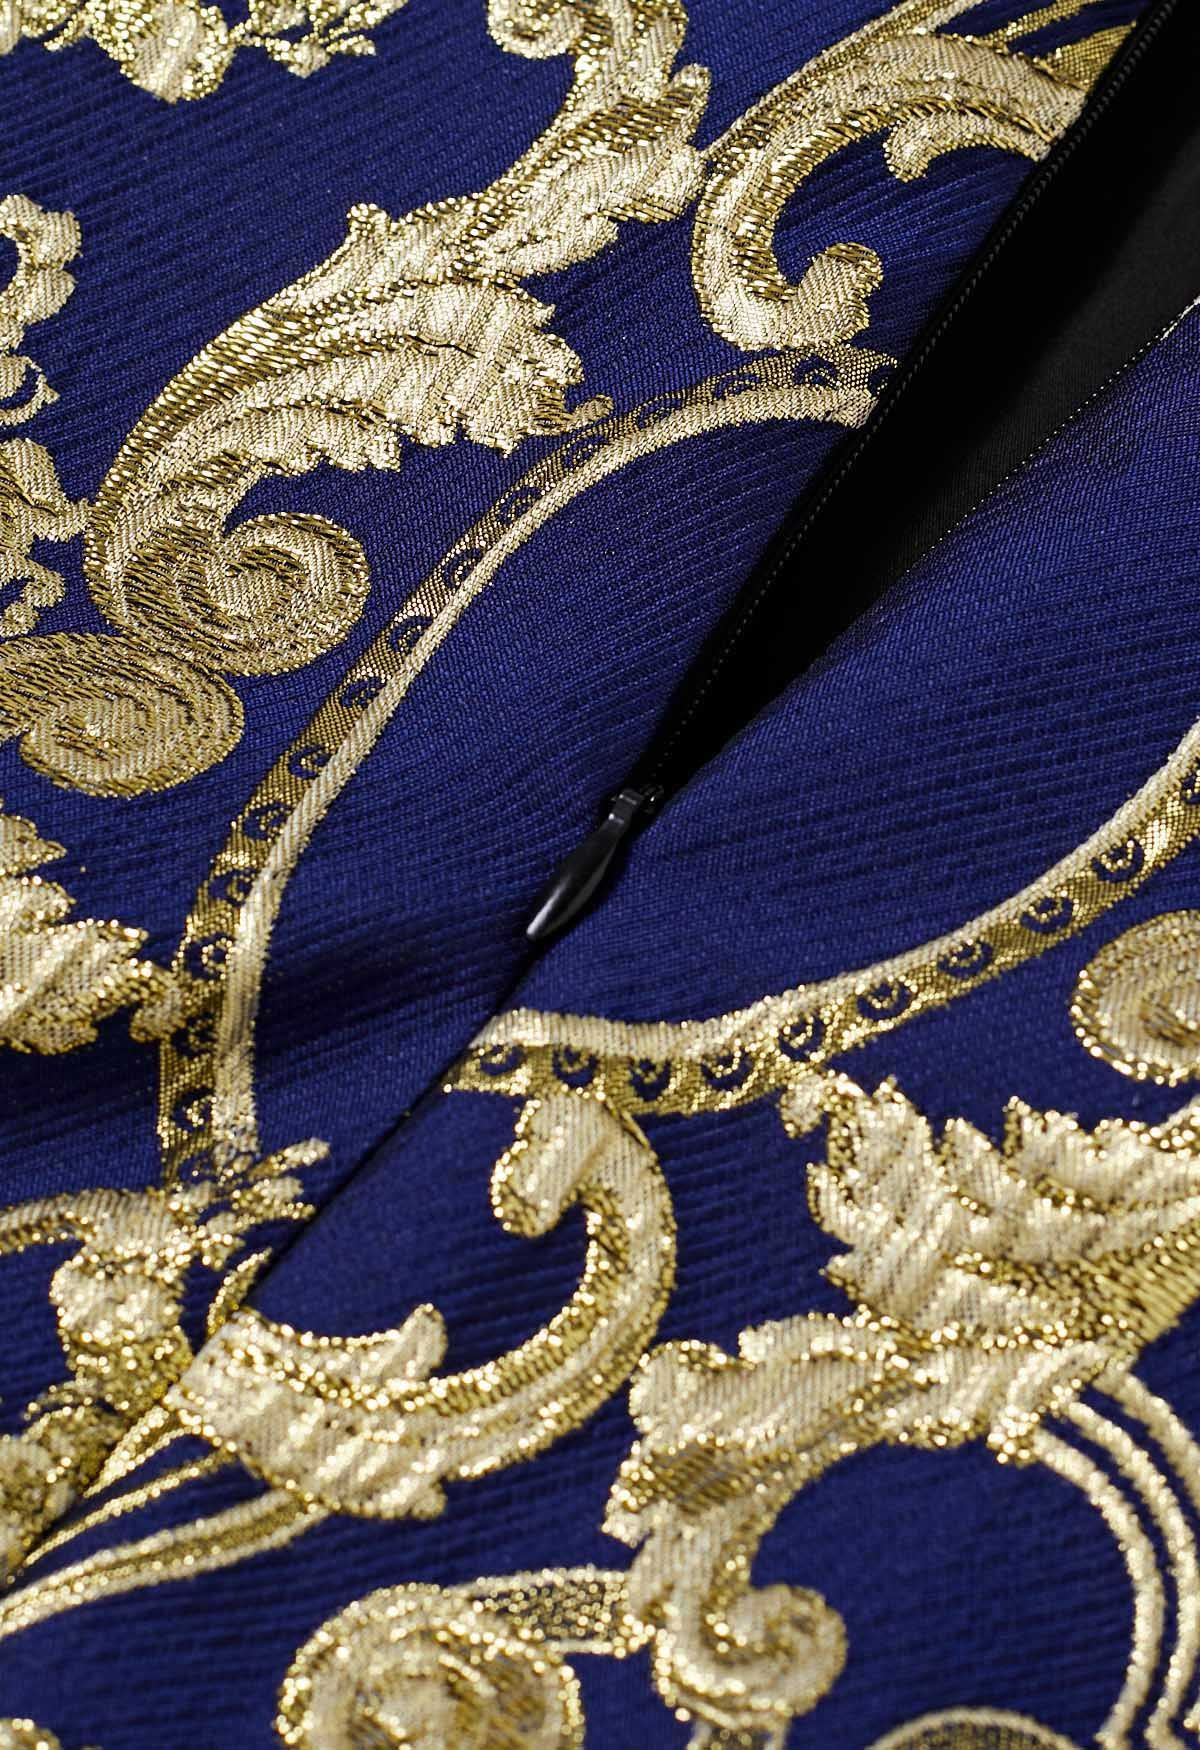 Glamorous - Jupe longue en jacquard baroque à fils métallisés - Bleu marine